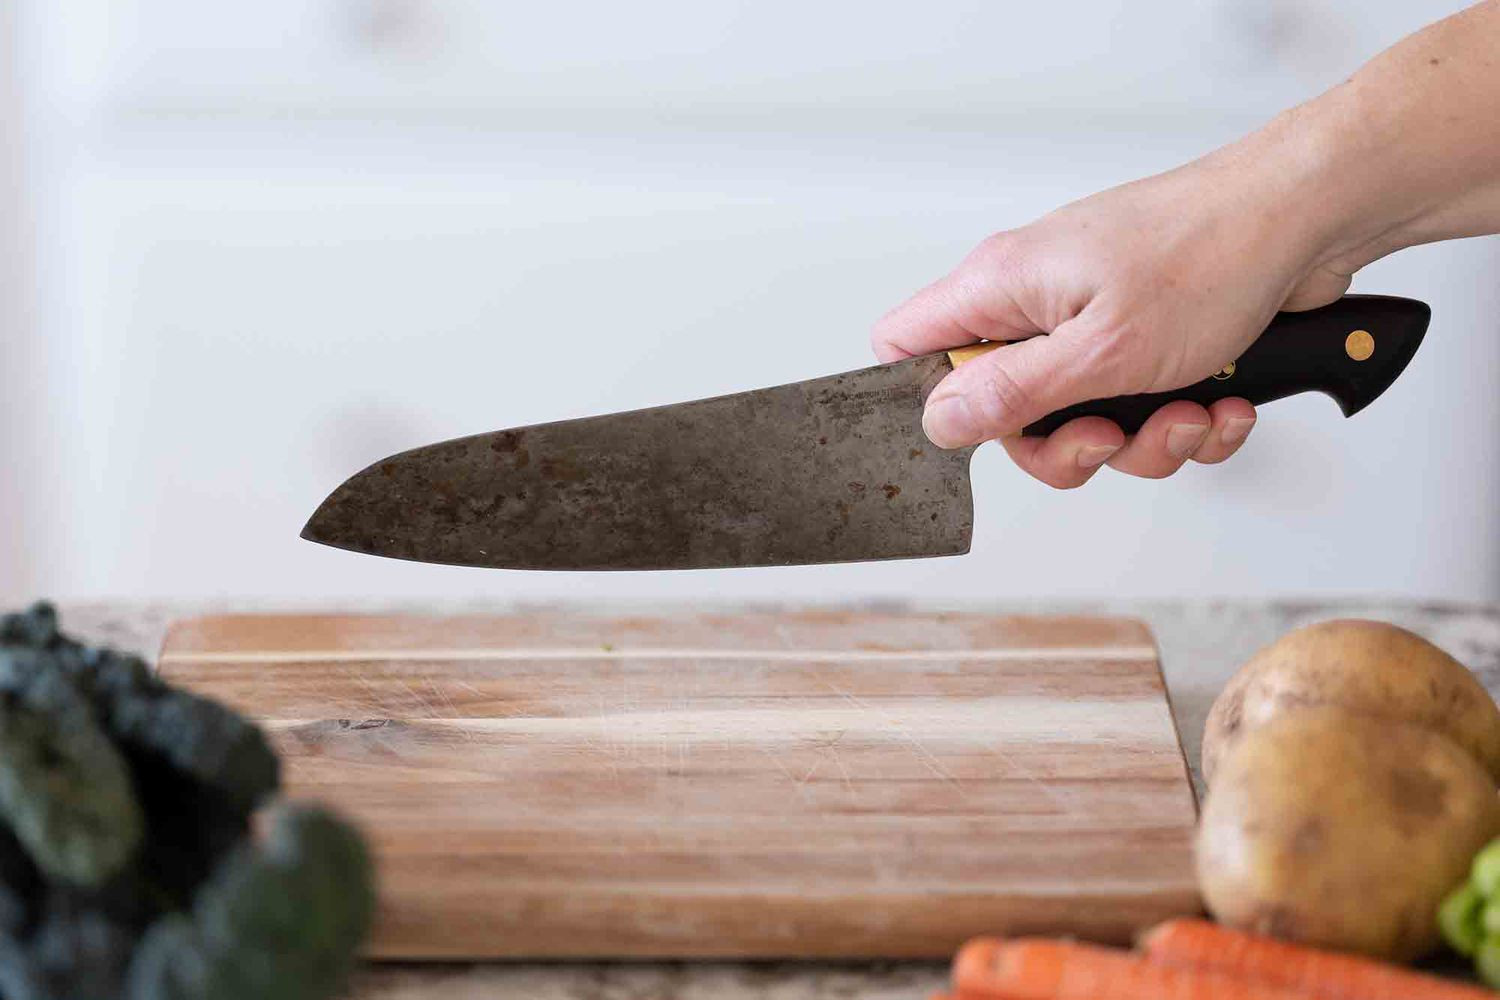 Những vật sắc nhọn như dao, kéo,... nên tránh để treo lơ lửng trong bếp (Hình minh họa/Simply Recipes)